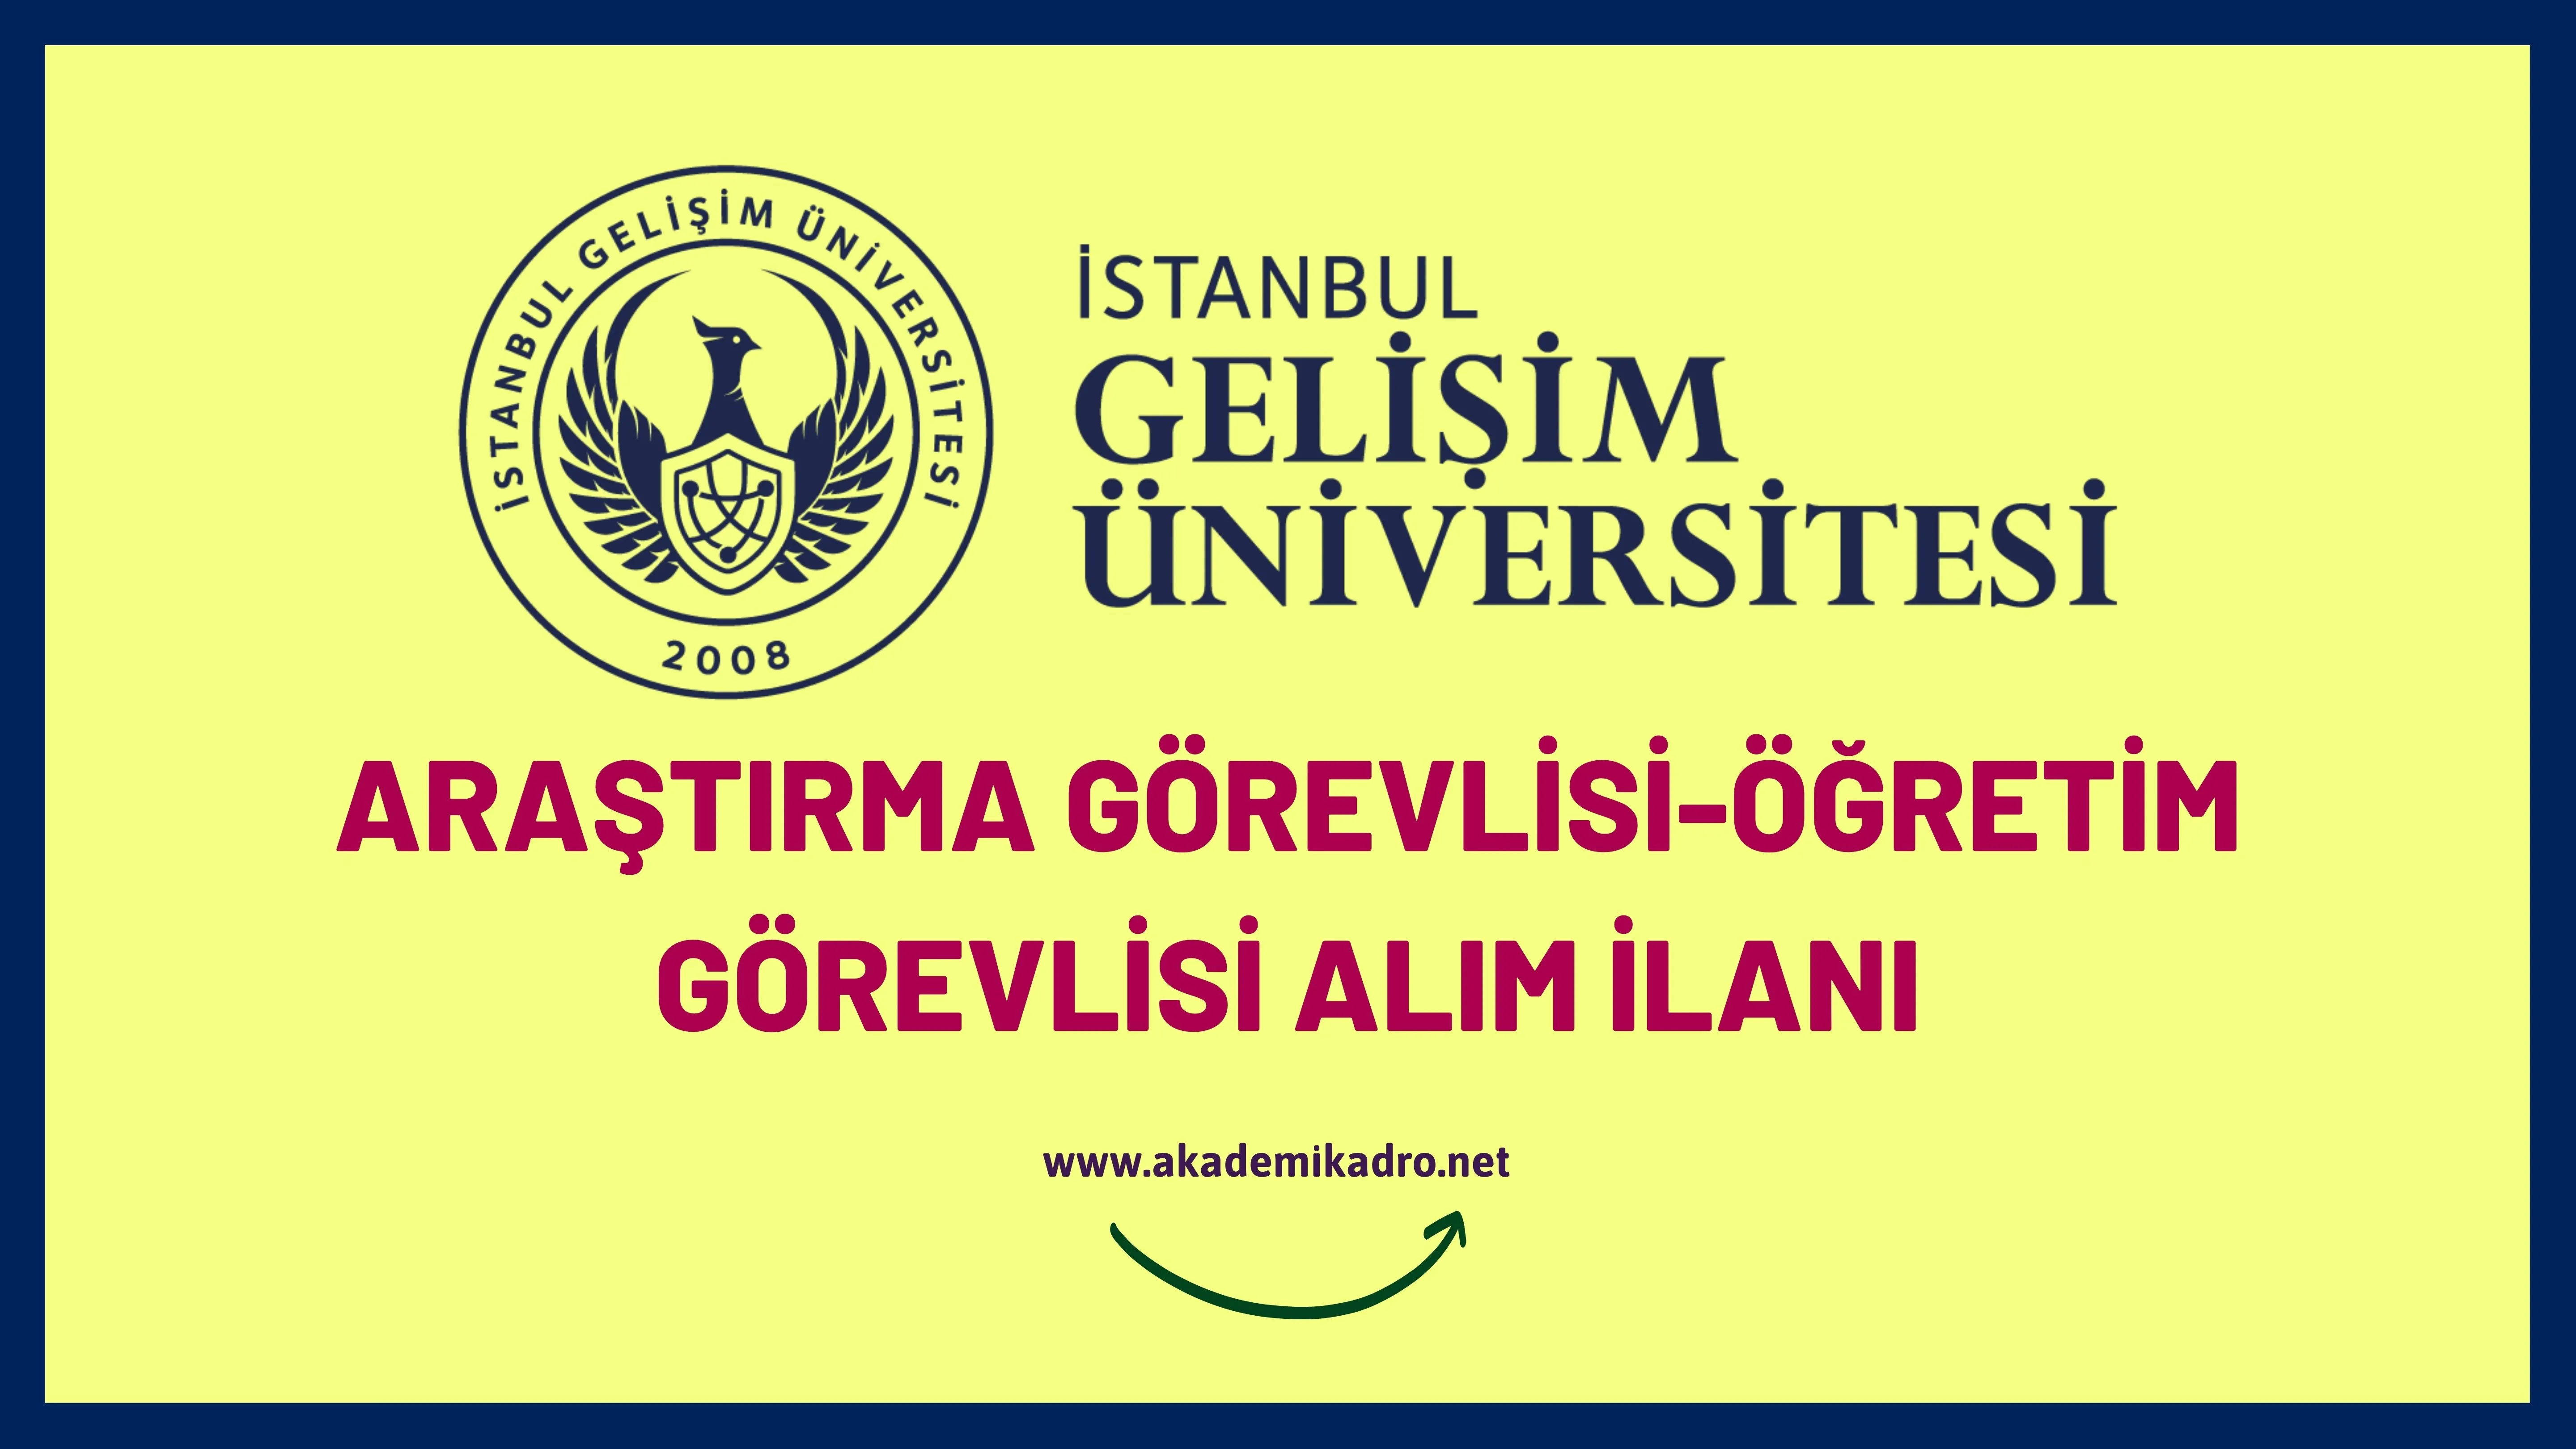 İstanbul Gelişim Üniversitesi 14 Araştırma görevlisi, 12 öğretim görevlisi ve çok sayıda akademik personel alacaktır.